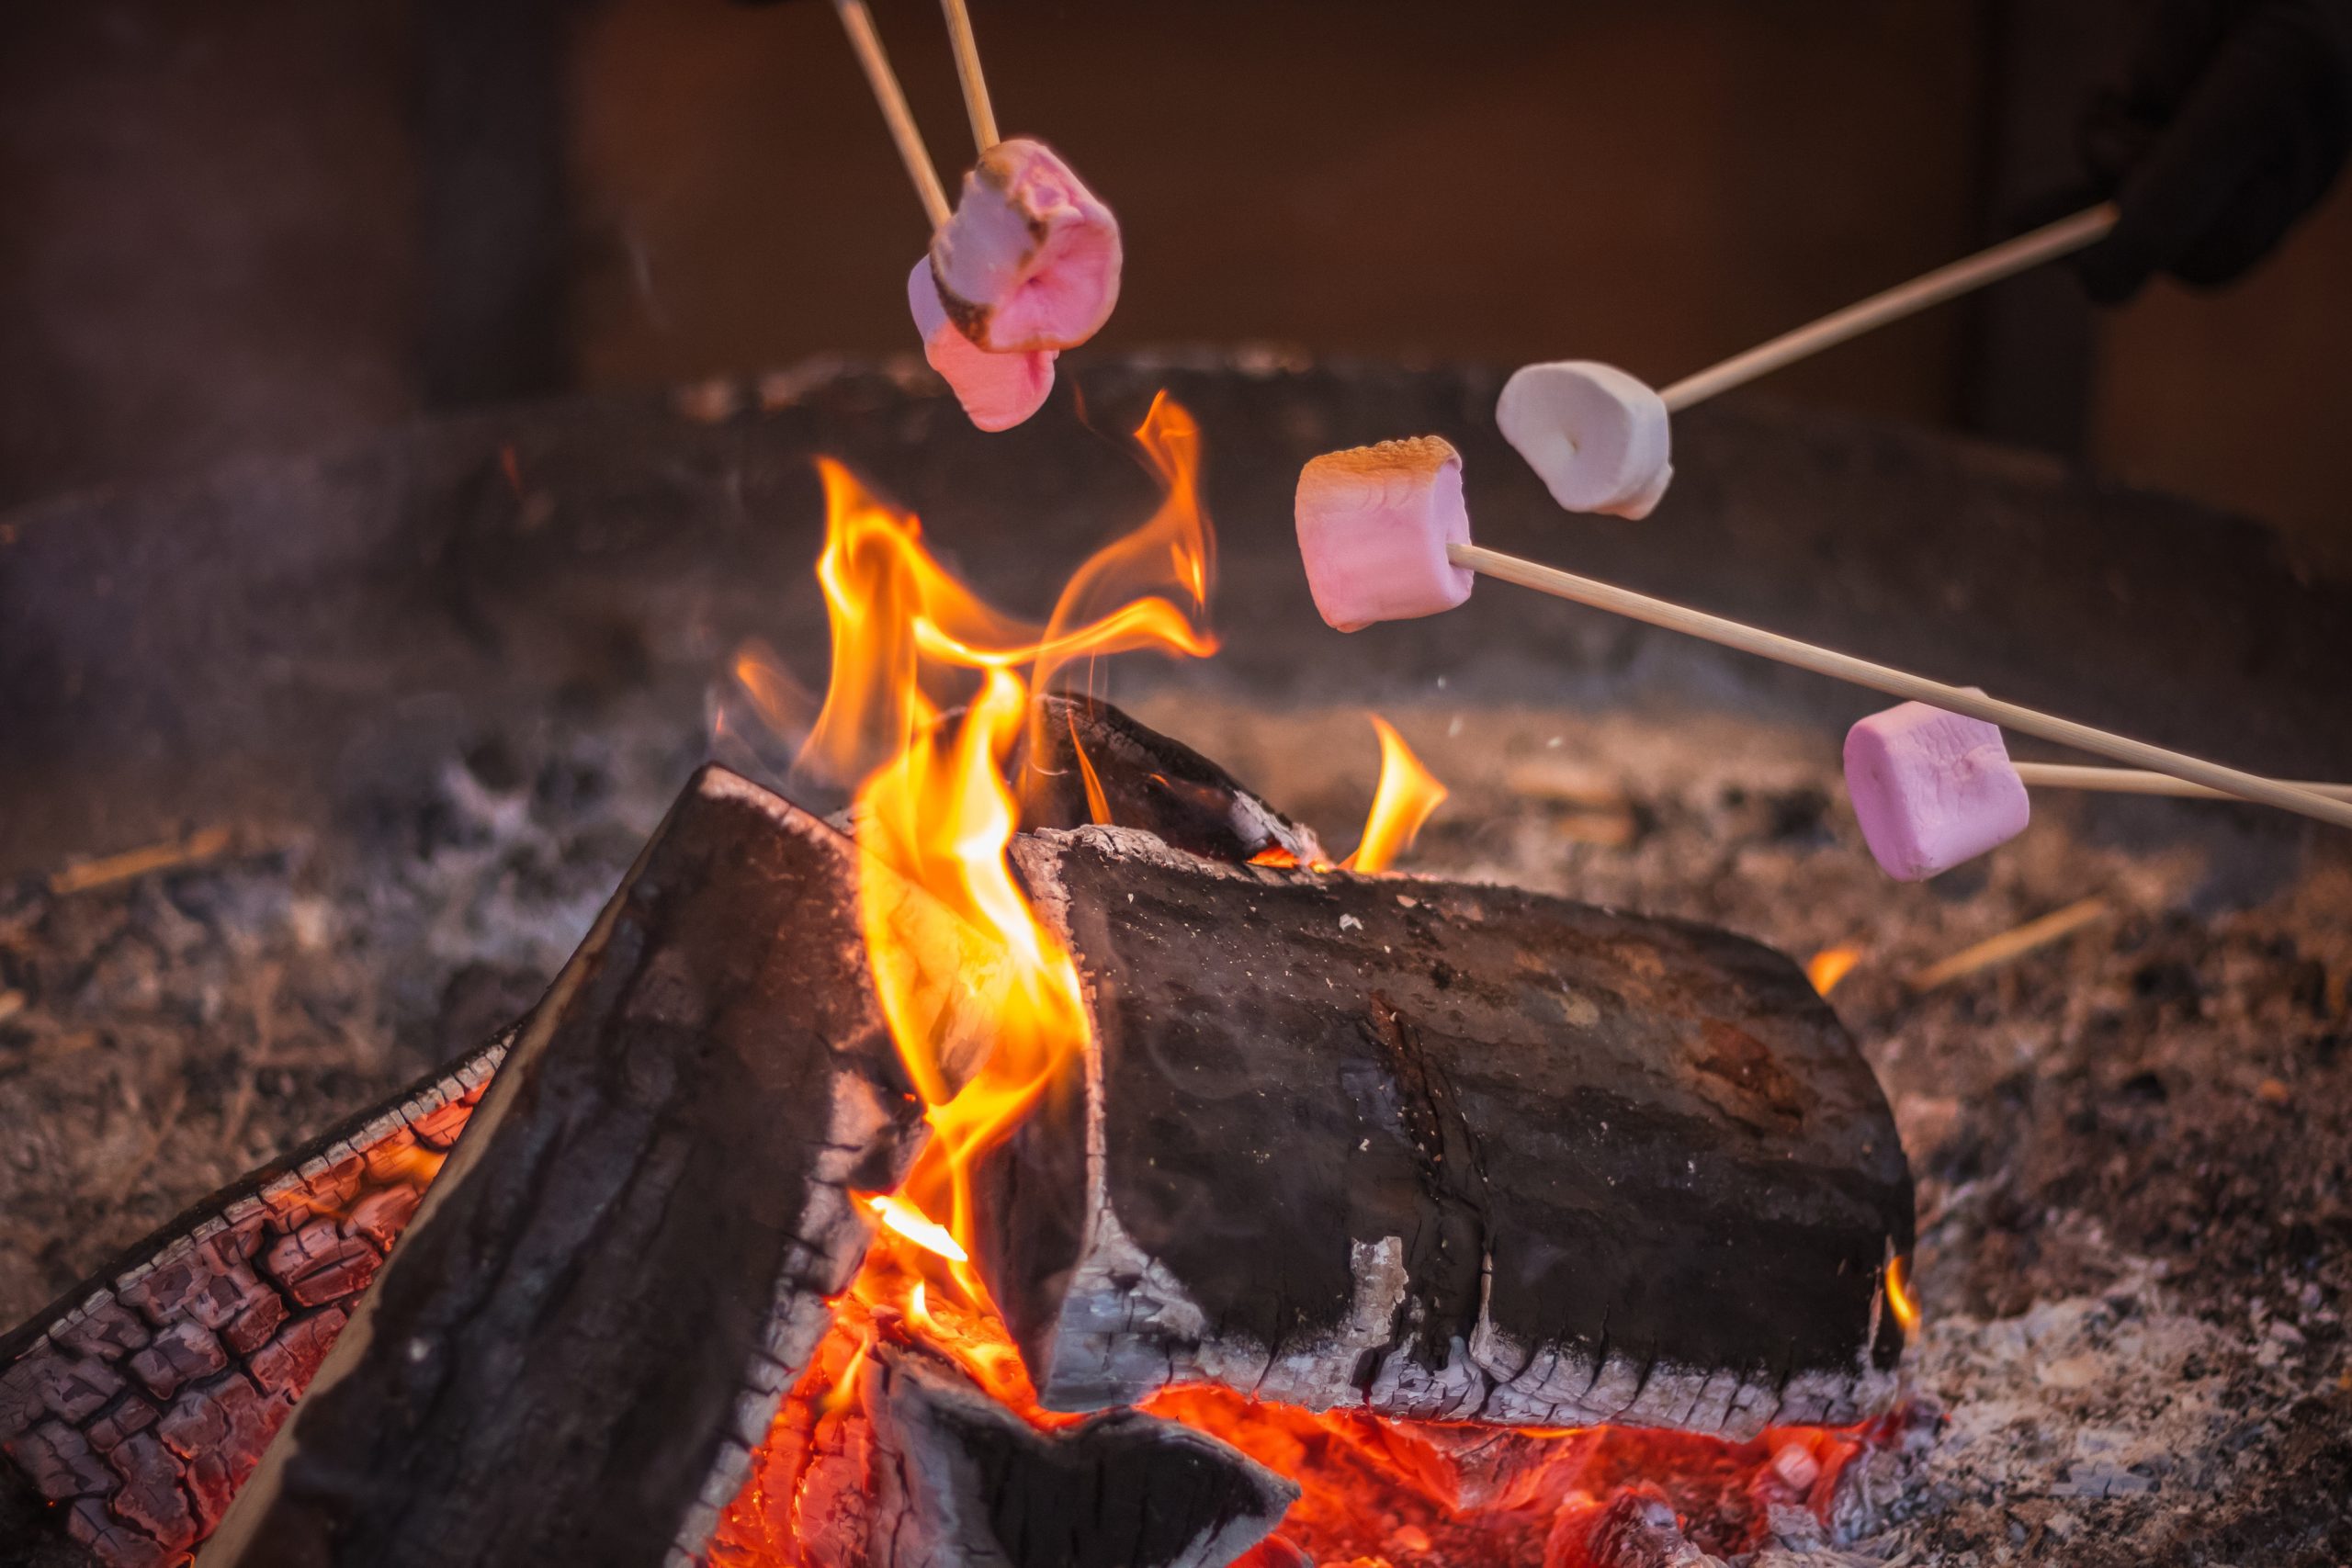 Marshmellows roasting over an open fire